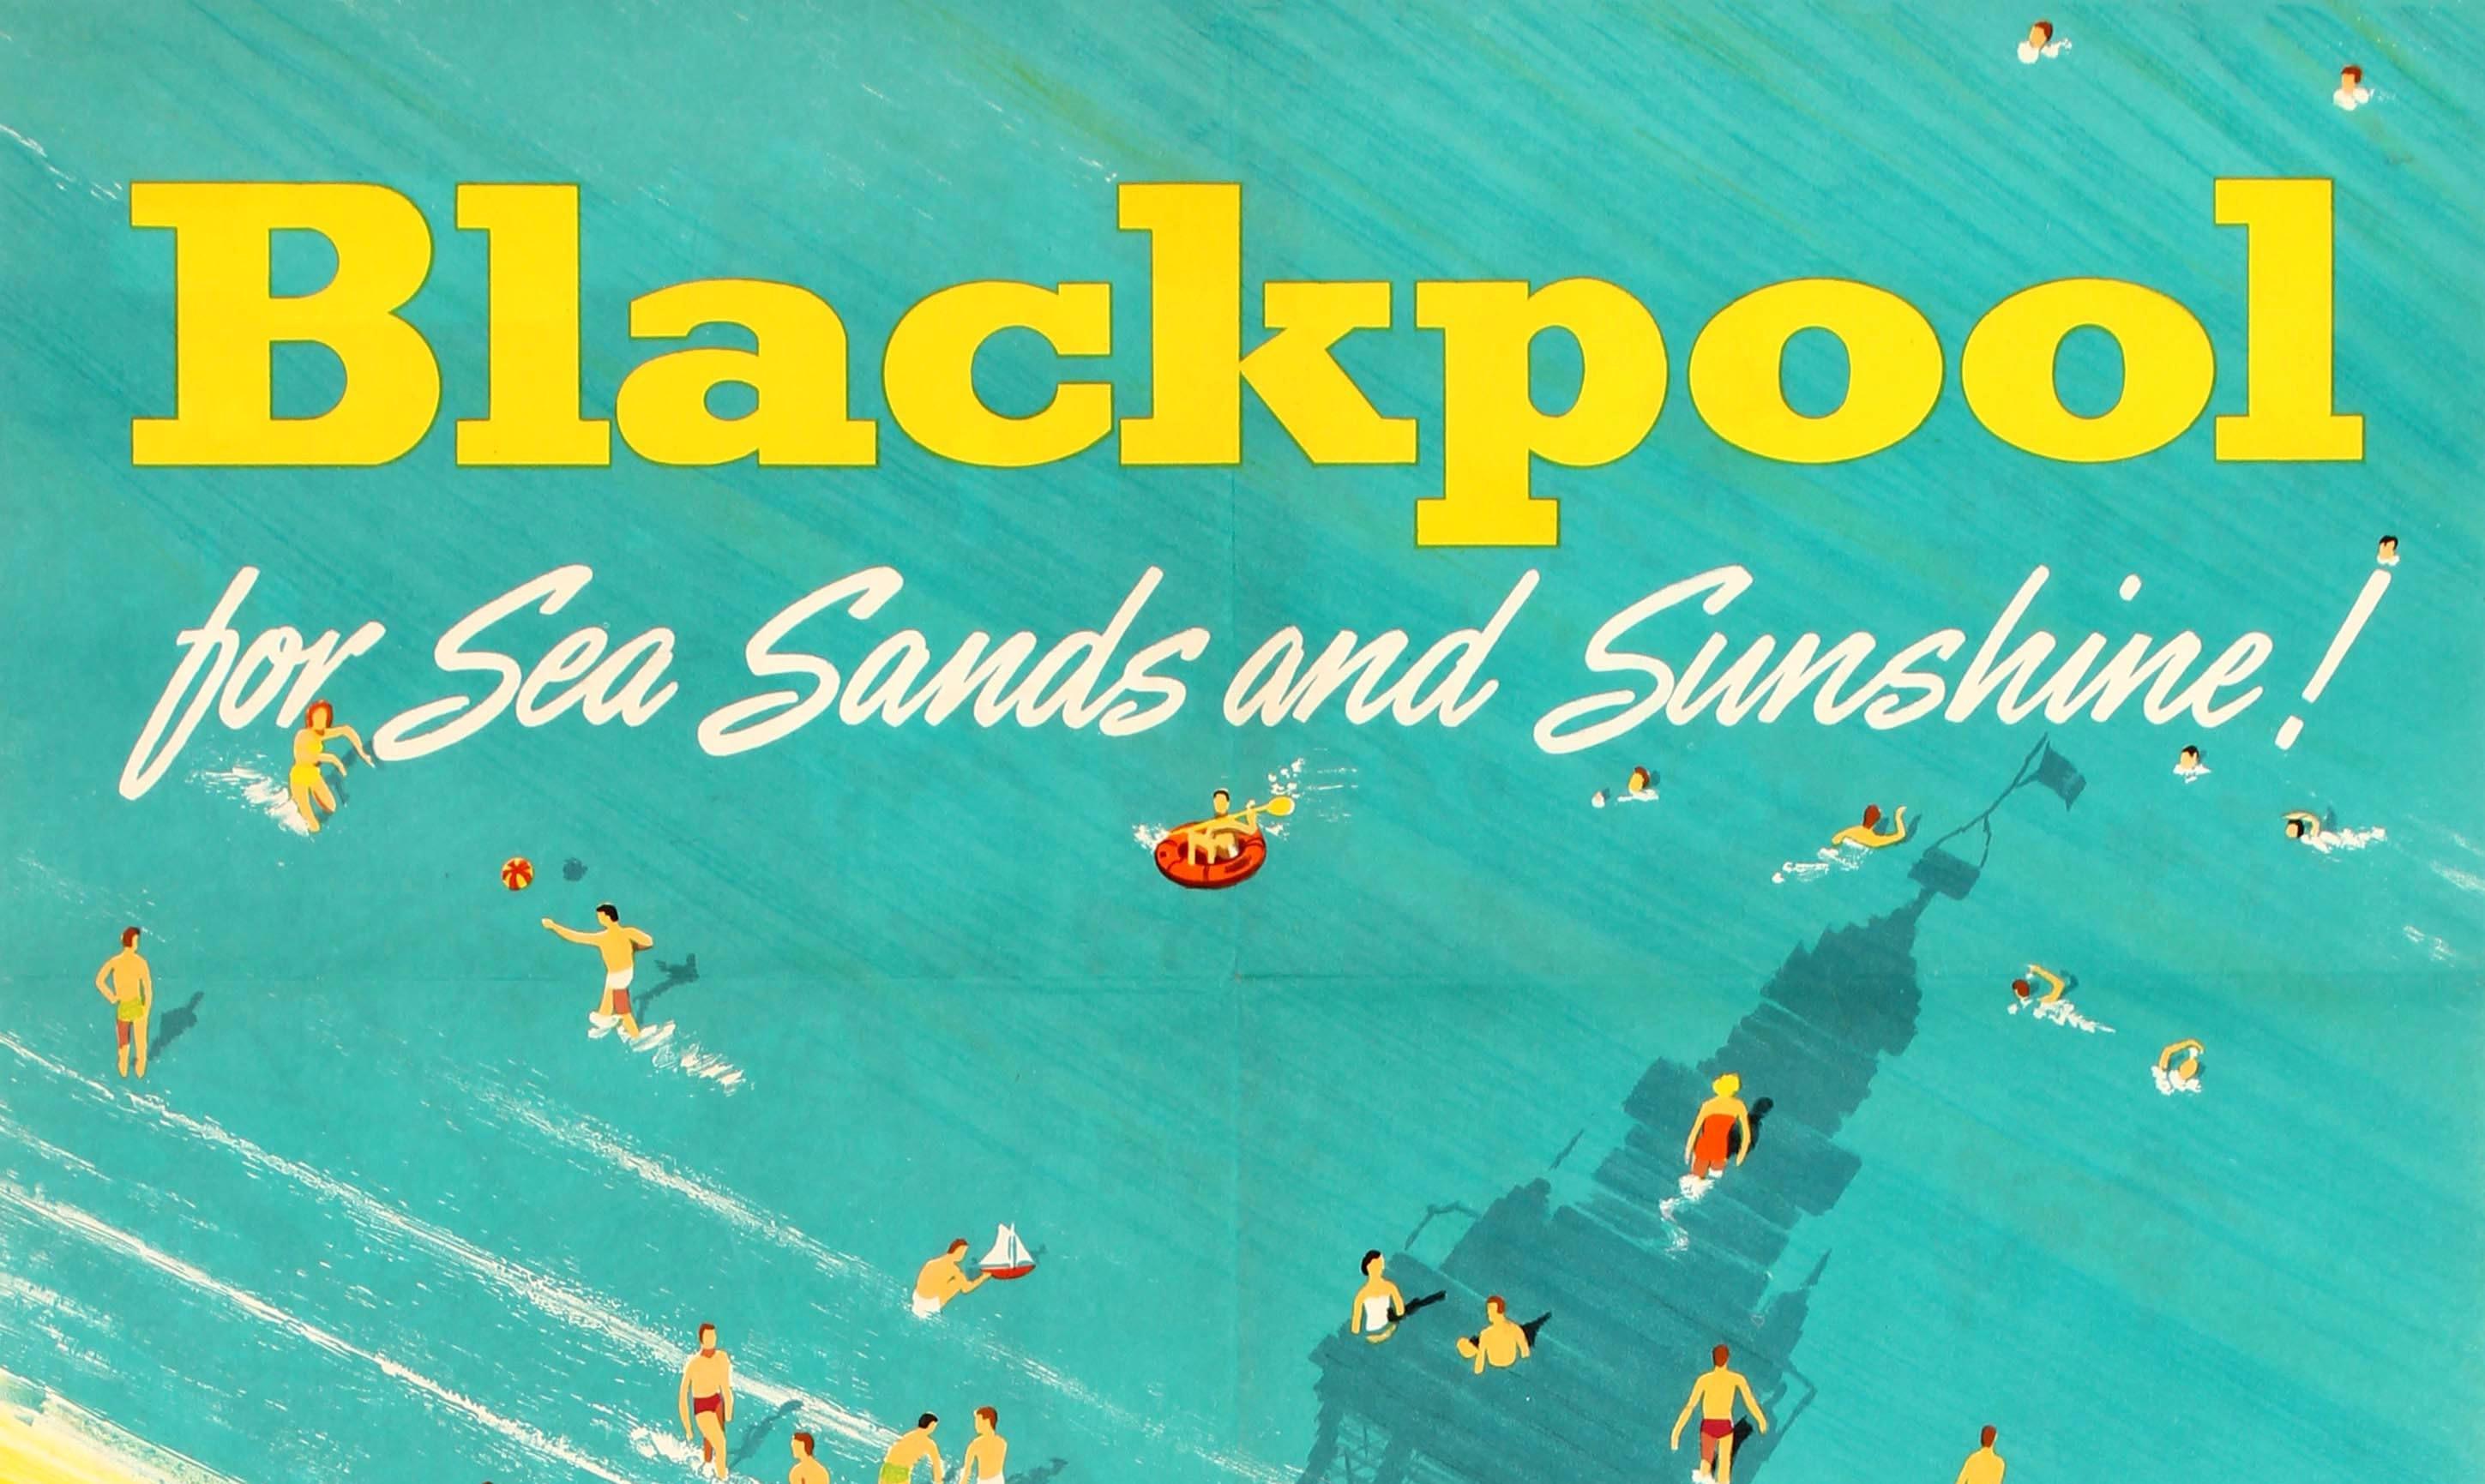 Original-Reiseplakat für Blackpool als Urlaubsziel, herausgegeben von British Railways. Helle und sonnige Luftaufnahme eines Strandes in Blackpool mit Paaren und Familien, die spazieren gehen, Kindern, die eine Sandburg bauen, Menschen, die Kricket